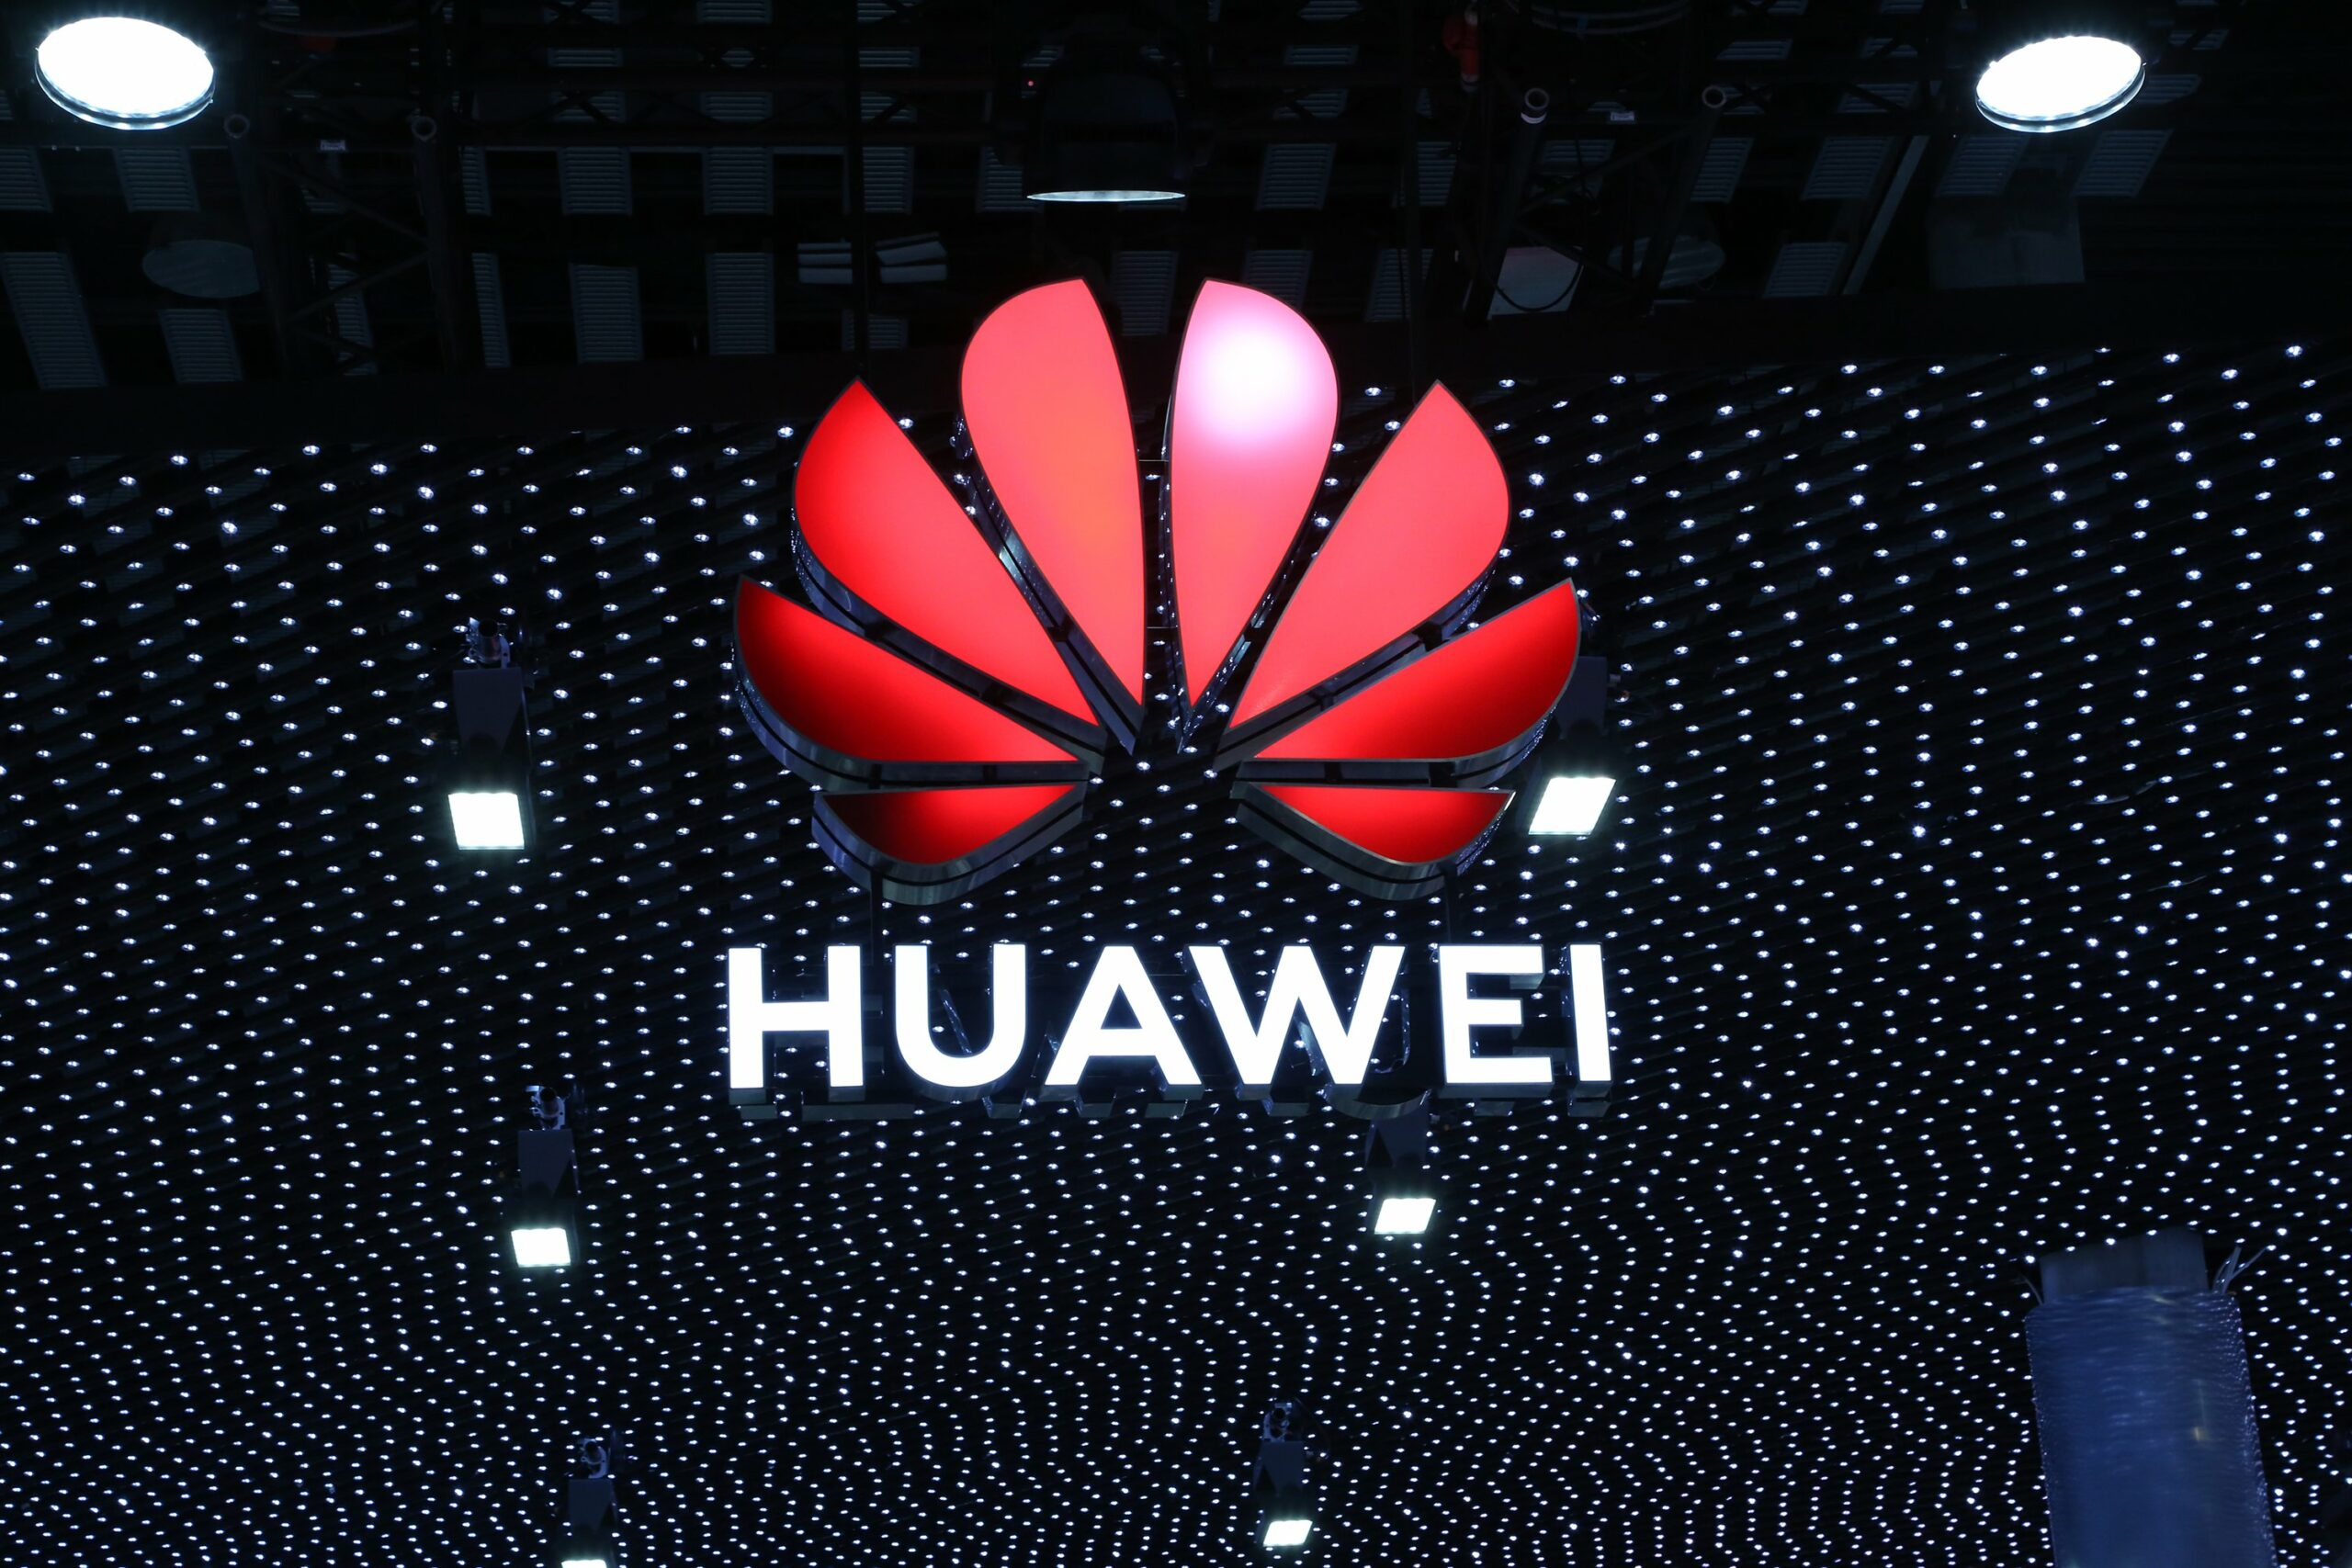 Huawei MWC 2019 logo